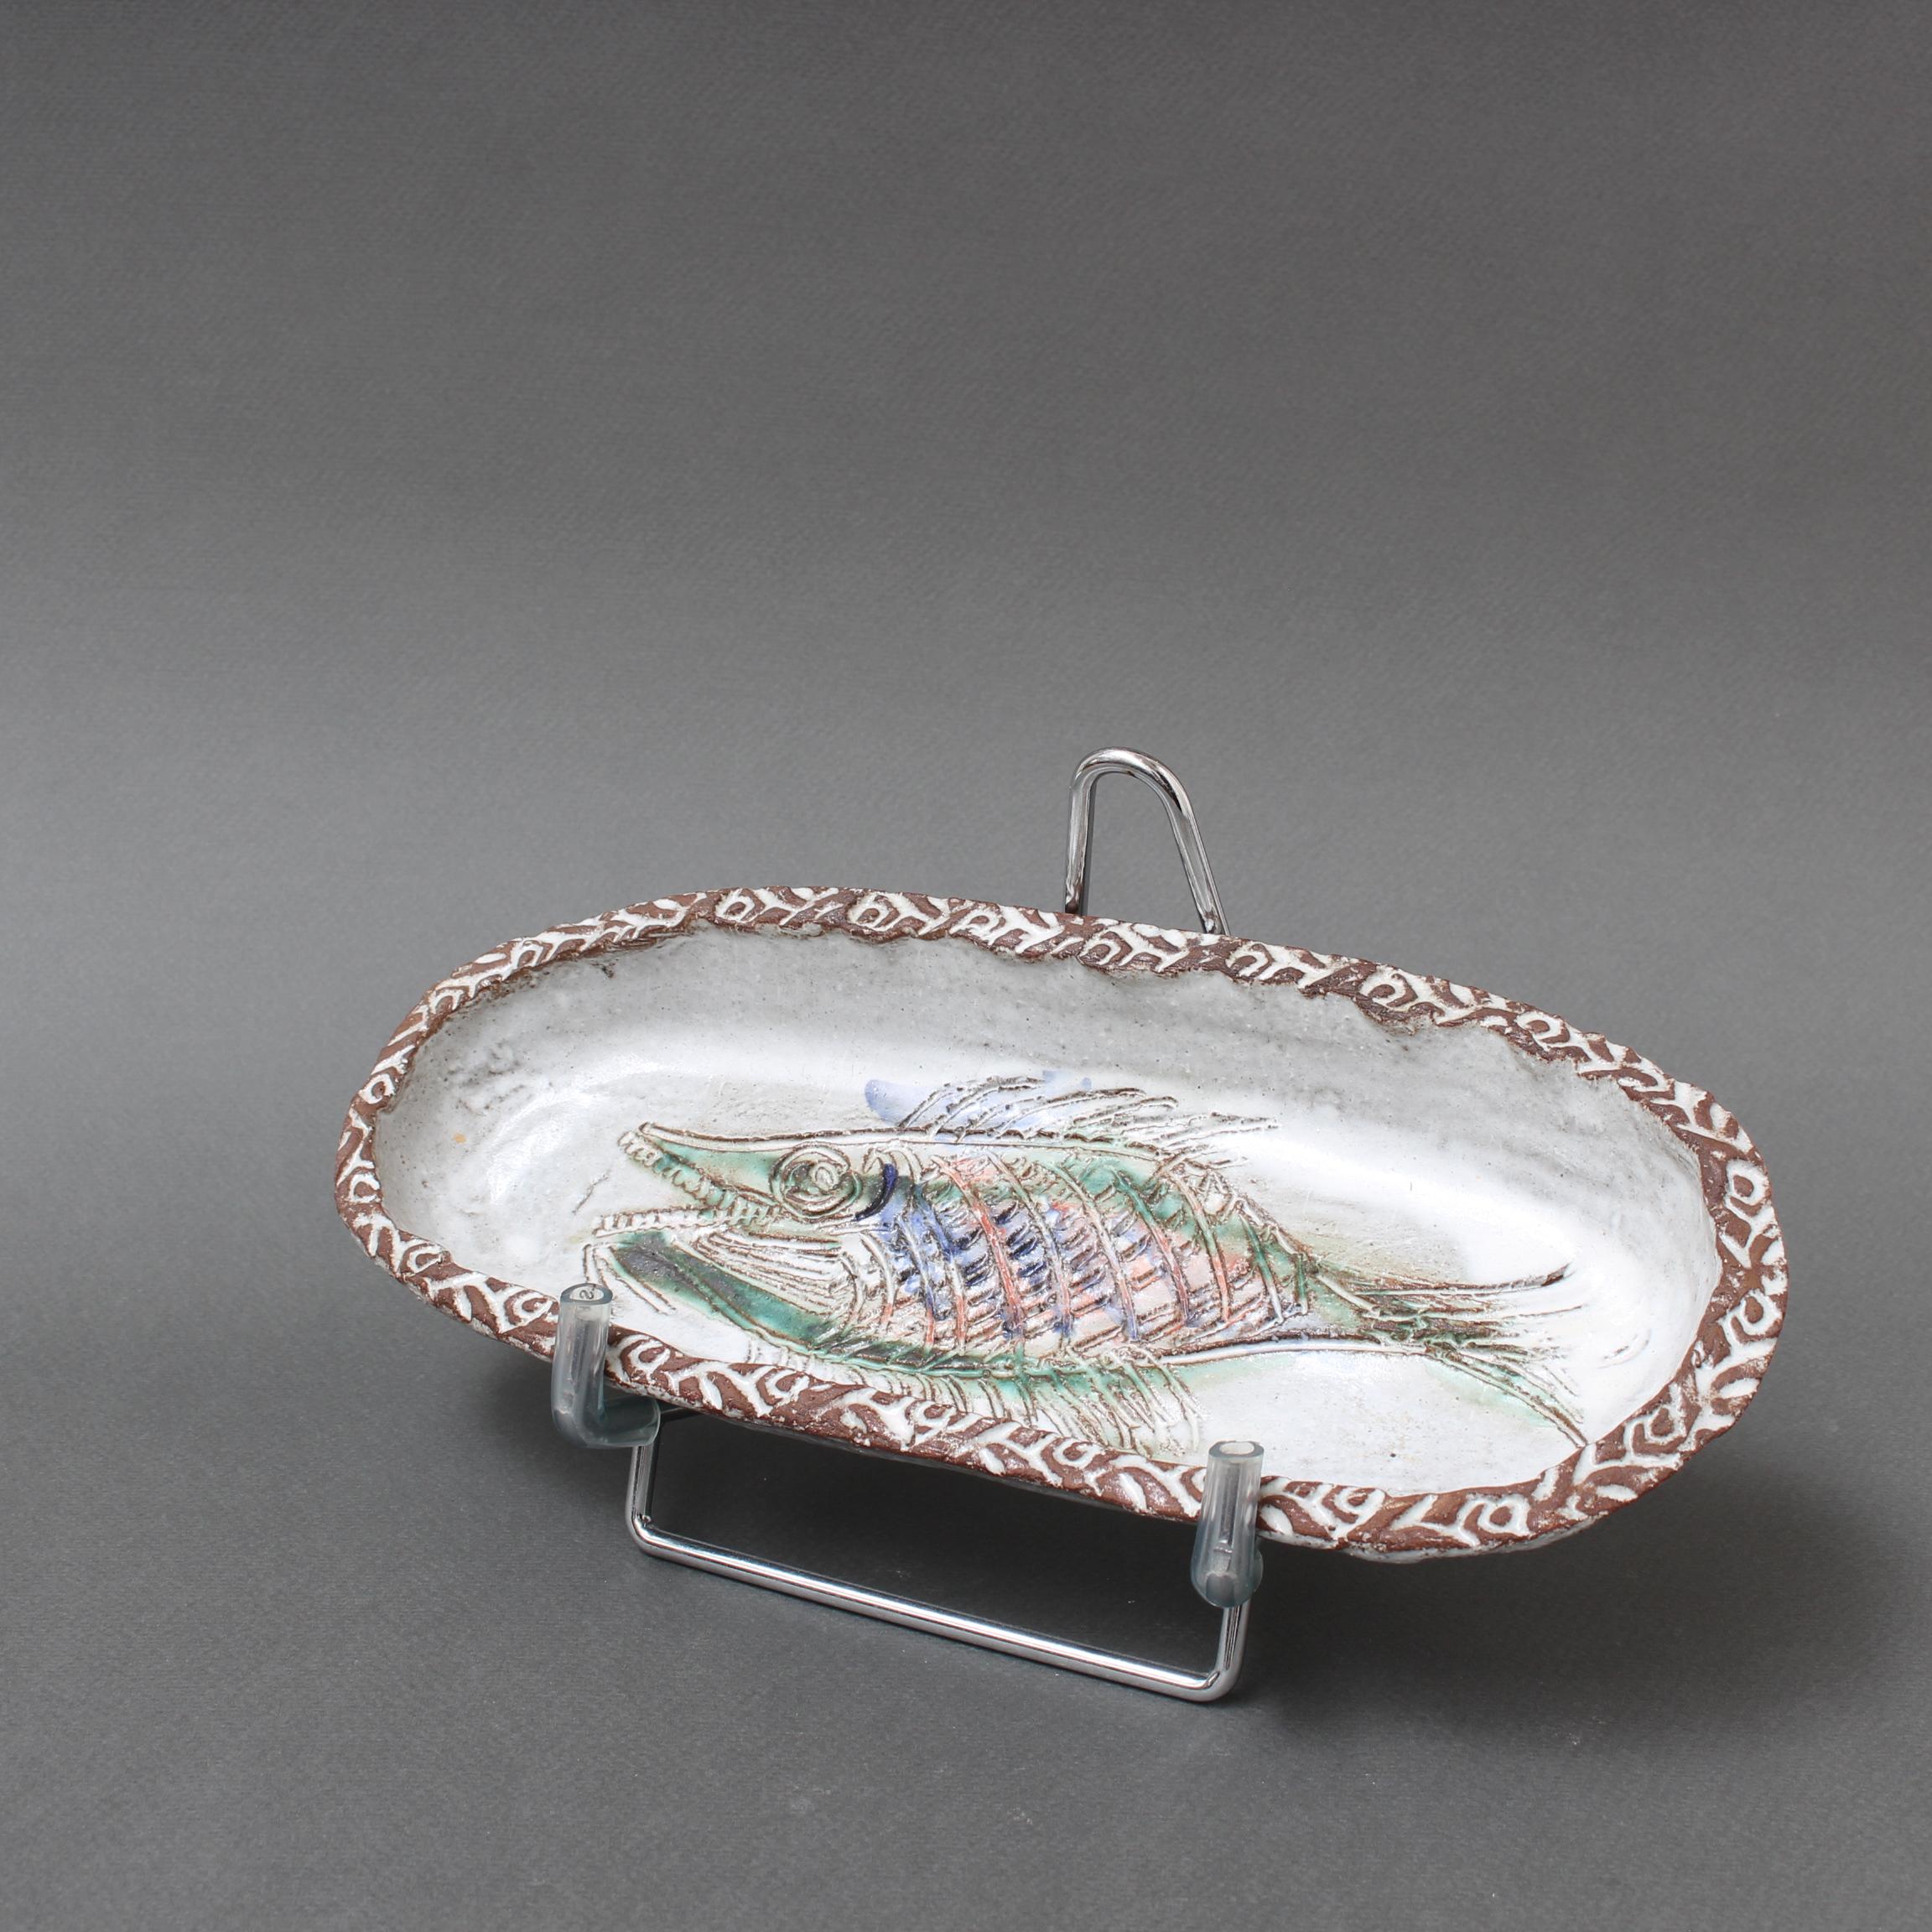 Plat décoratif en céramique française à motif de poisson (circa 1970) par Albert Thiry. Un plat en céramique de forme ovale est recouvert d'une glaçure blanche comme de la craie. Dans le creux du plat, un poisson est incisé dans la glaçure et peint